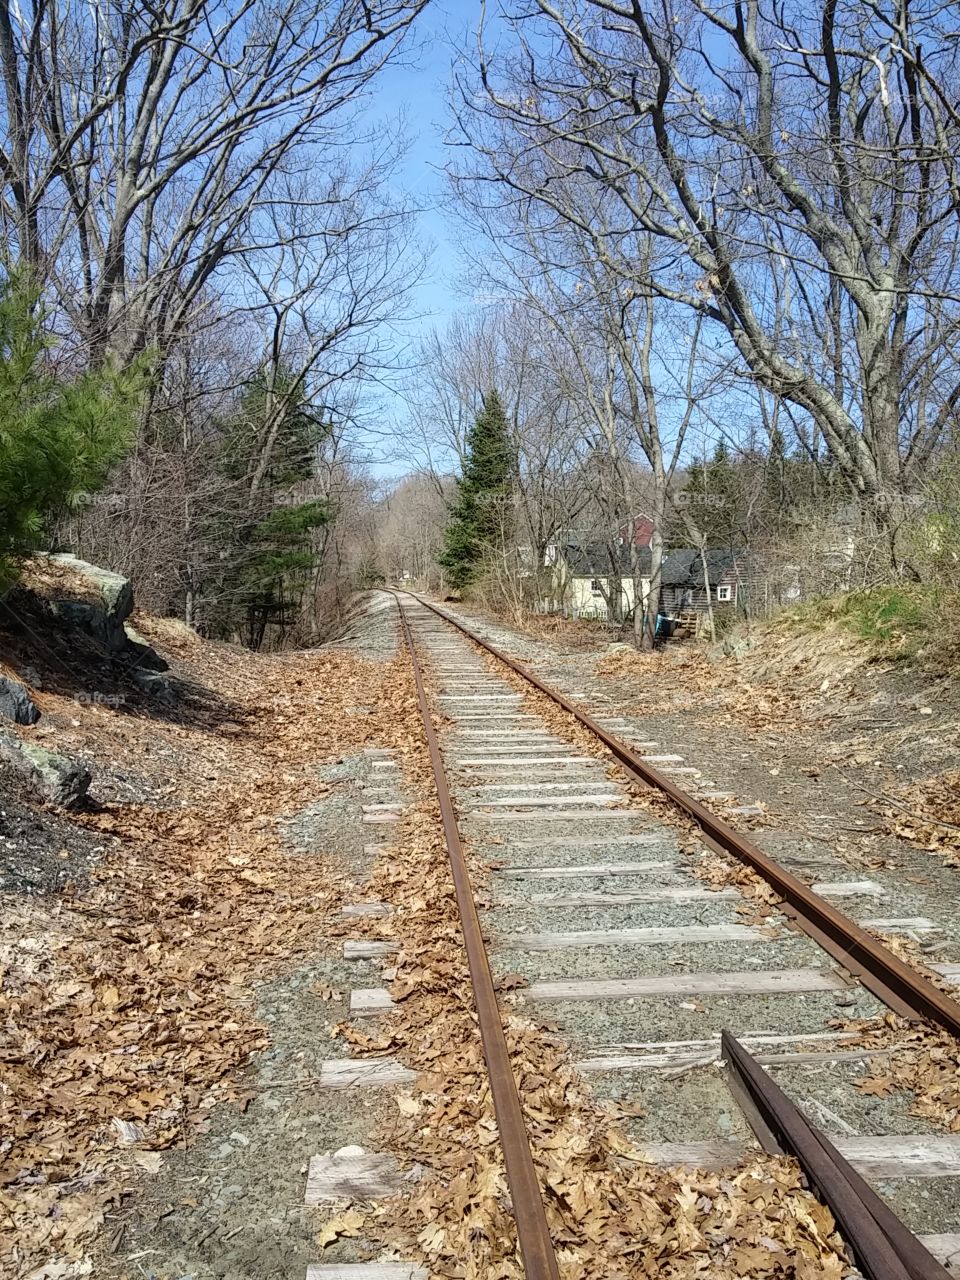 Train Tracks to Nowhere